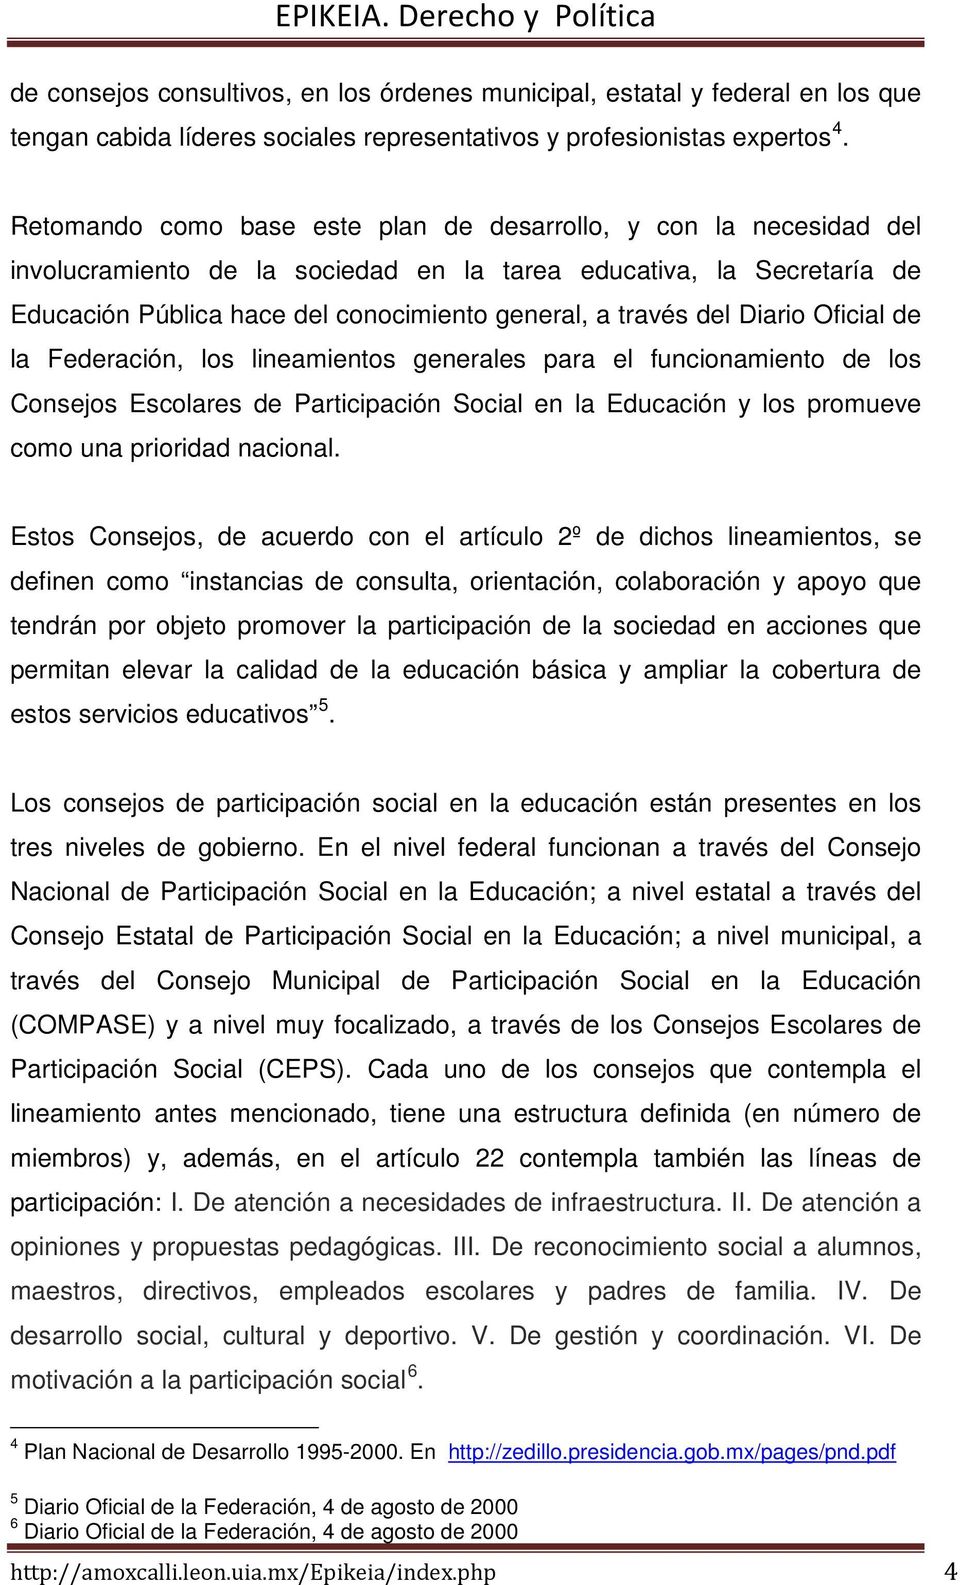 del Diario Oficial de la Federación, los lineamientos generales para el funcionamiento de los Consejos Escolares de Participación Social en la Educación y los promueve como una prioridad nacional.